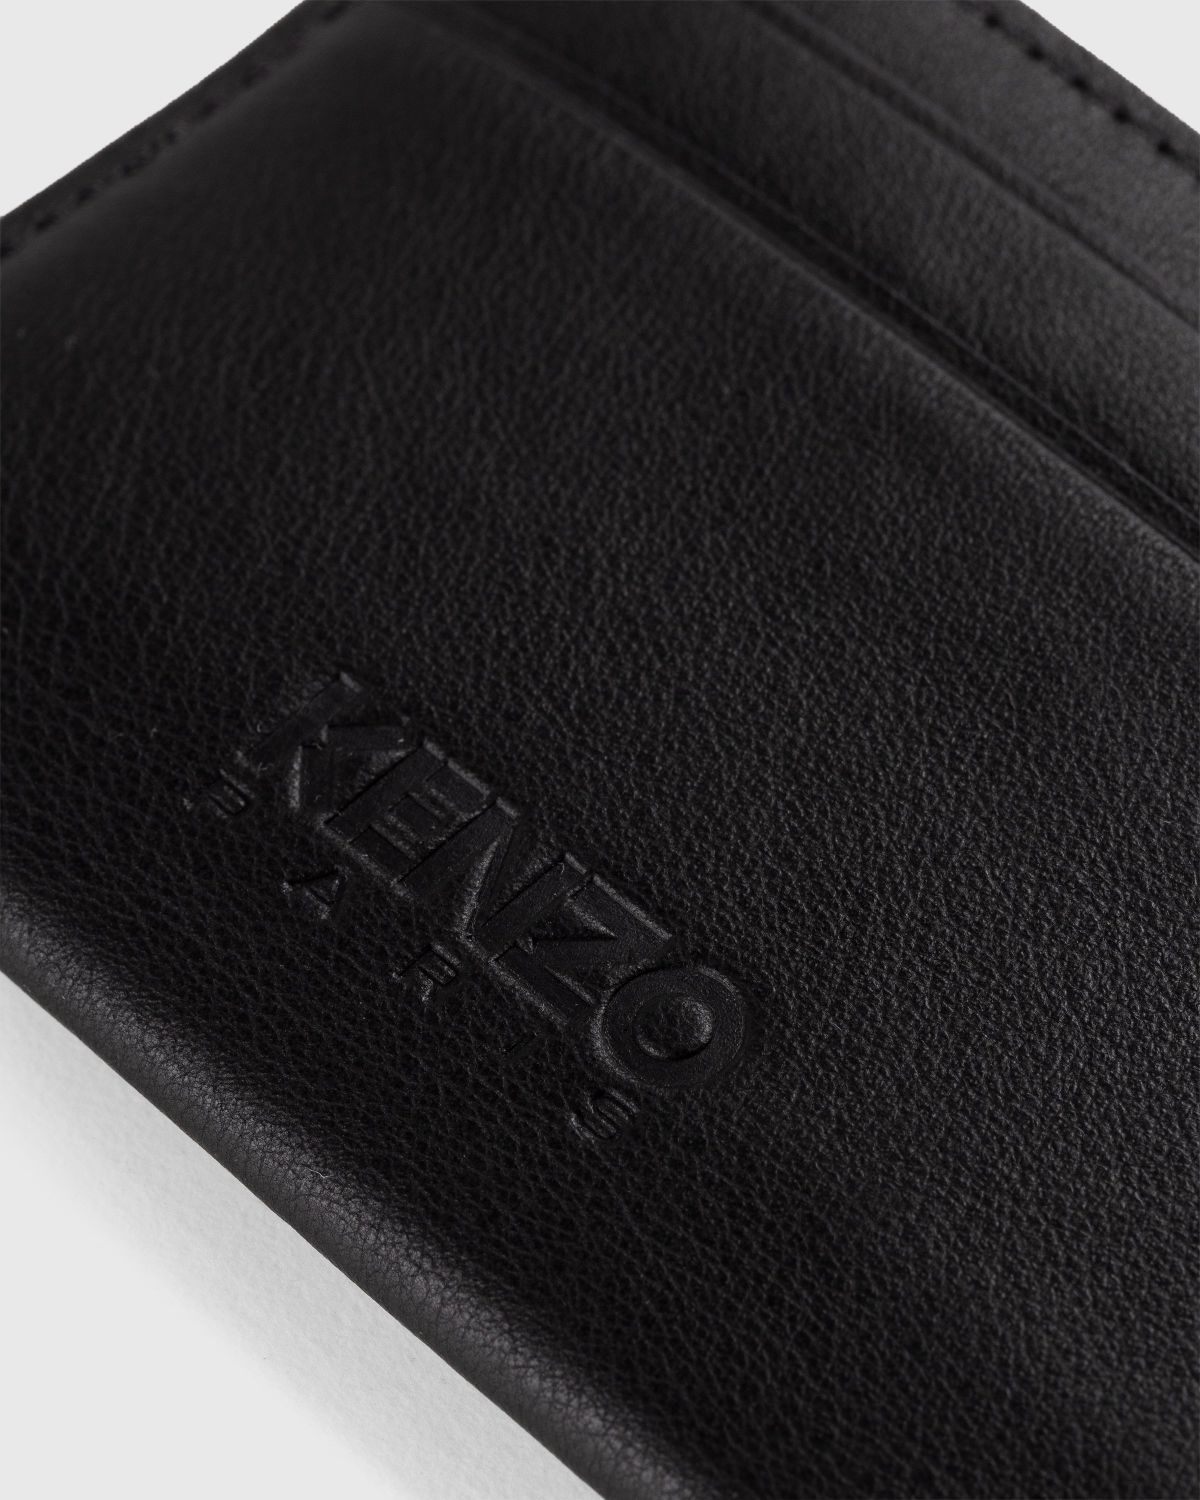 Kenzo – Crest Cardholder Black - Wallets - Black - Image 5